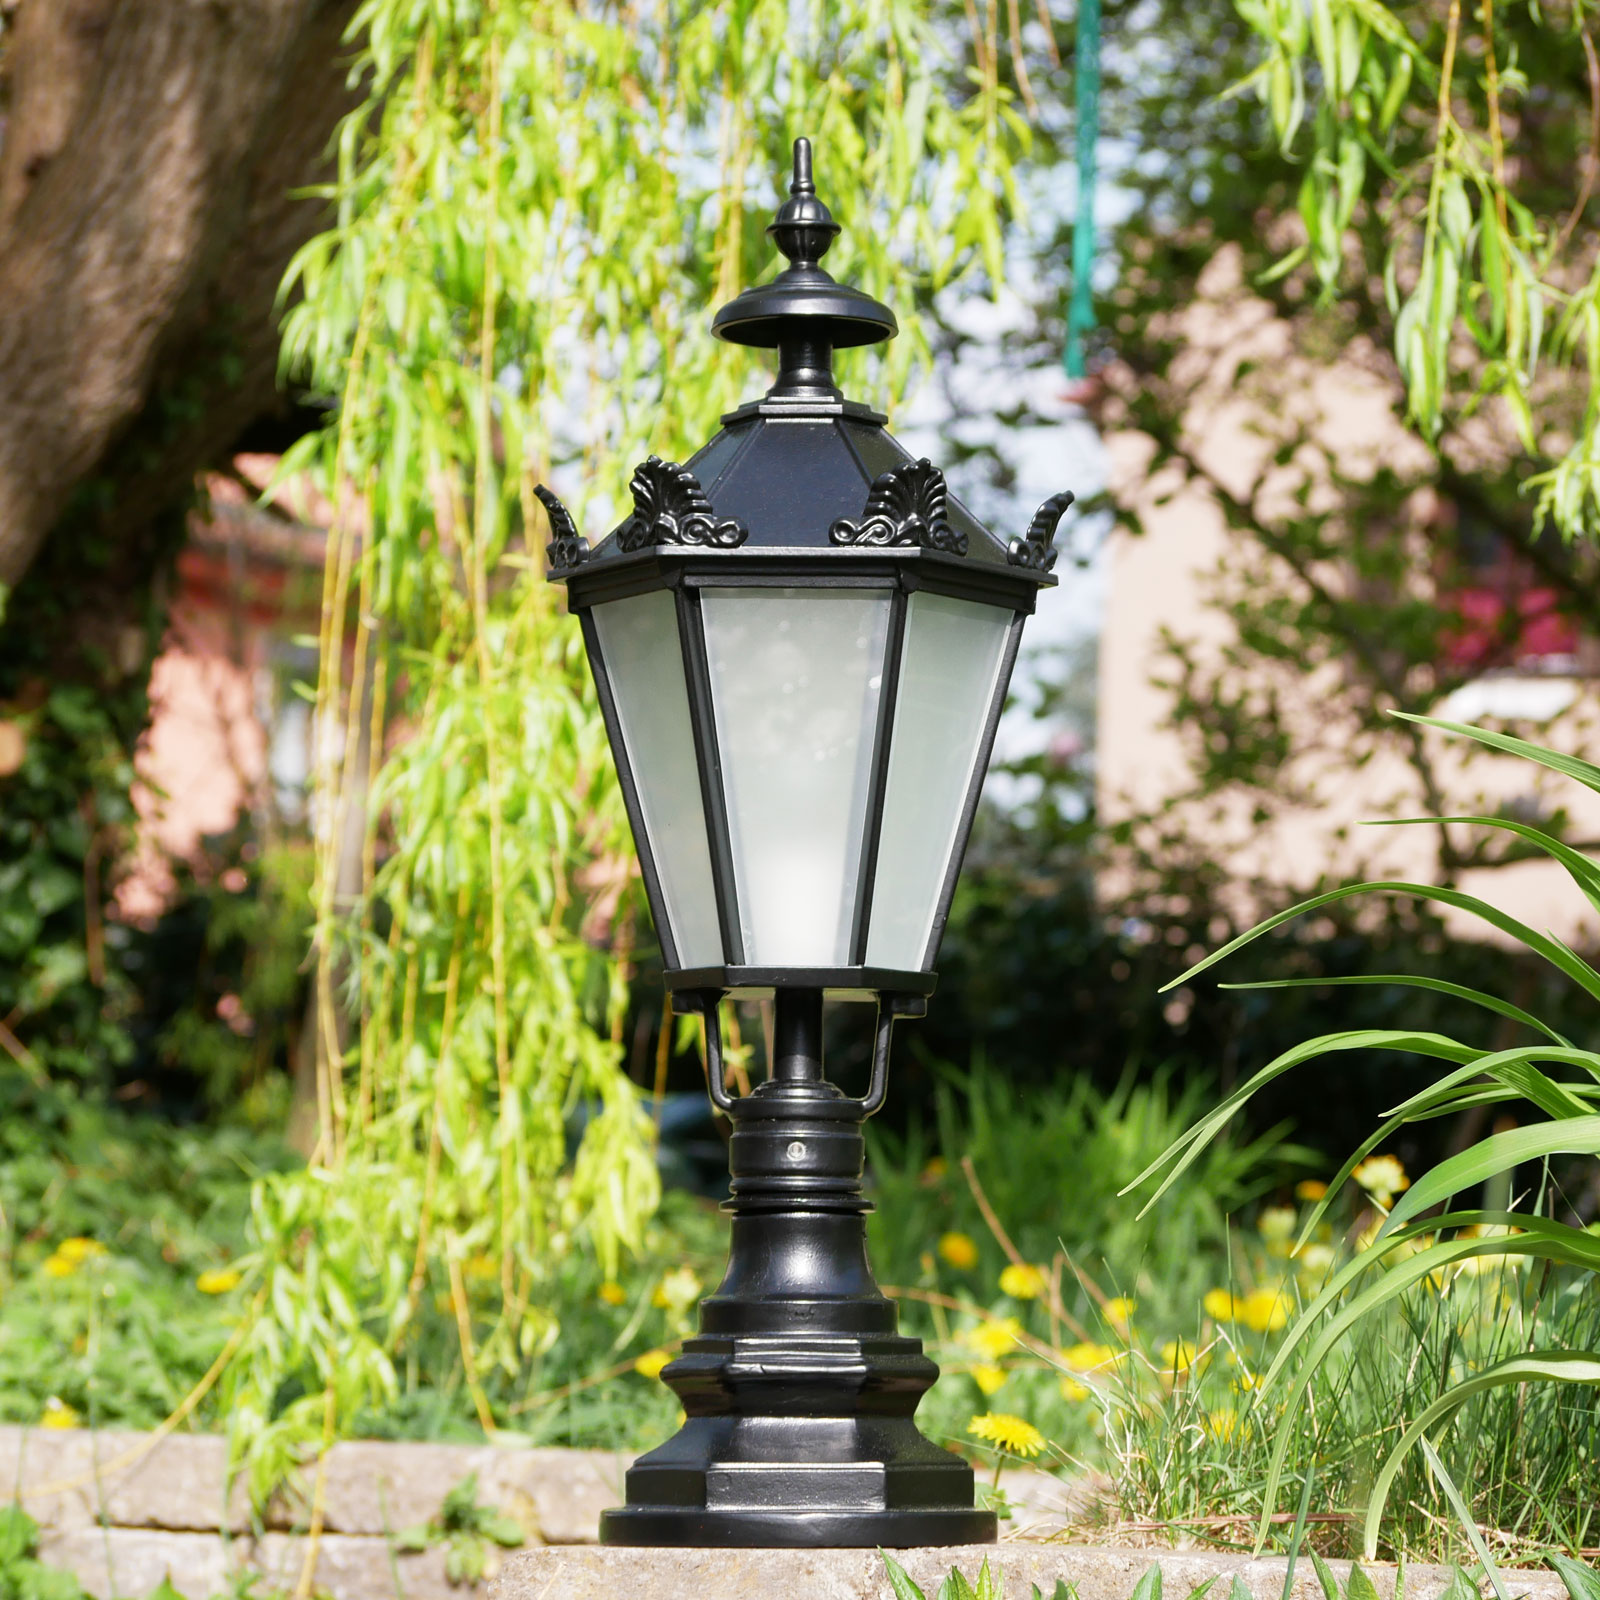 Pedestal Light Cypr with Lantern in Schinkel Style: Modell 1 in Tiefschwarz, mattes Glas